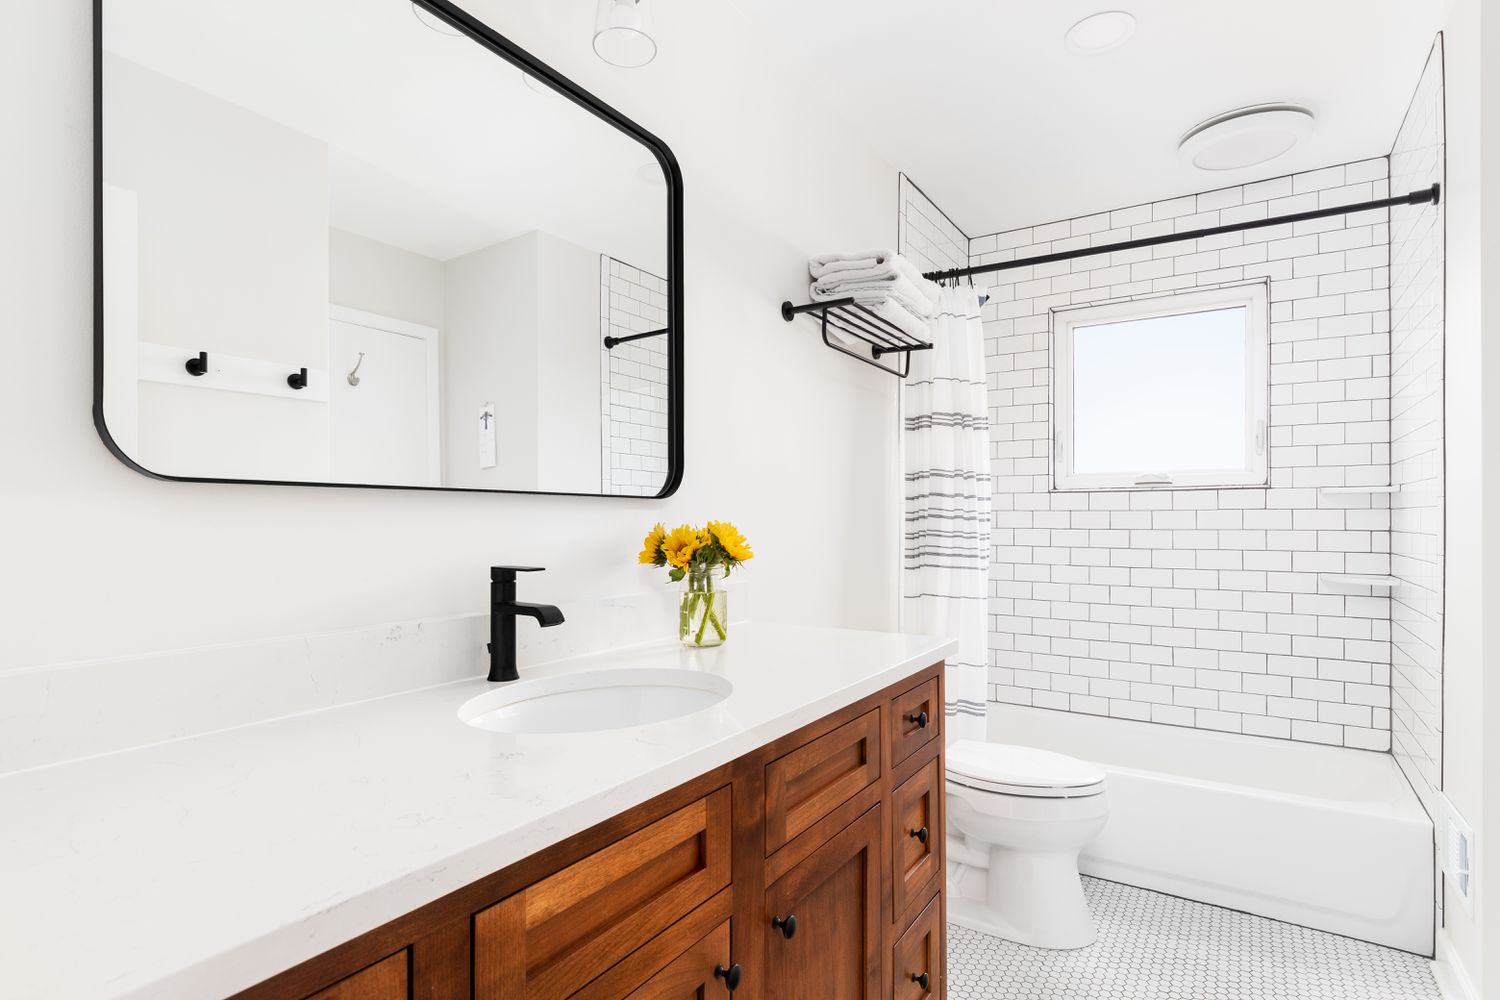 Um banheiro com azulejo branco e rejunte preto